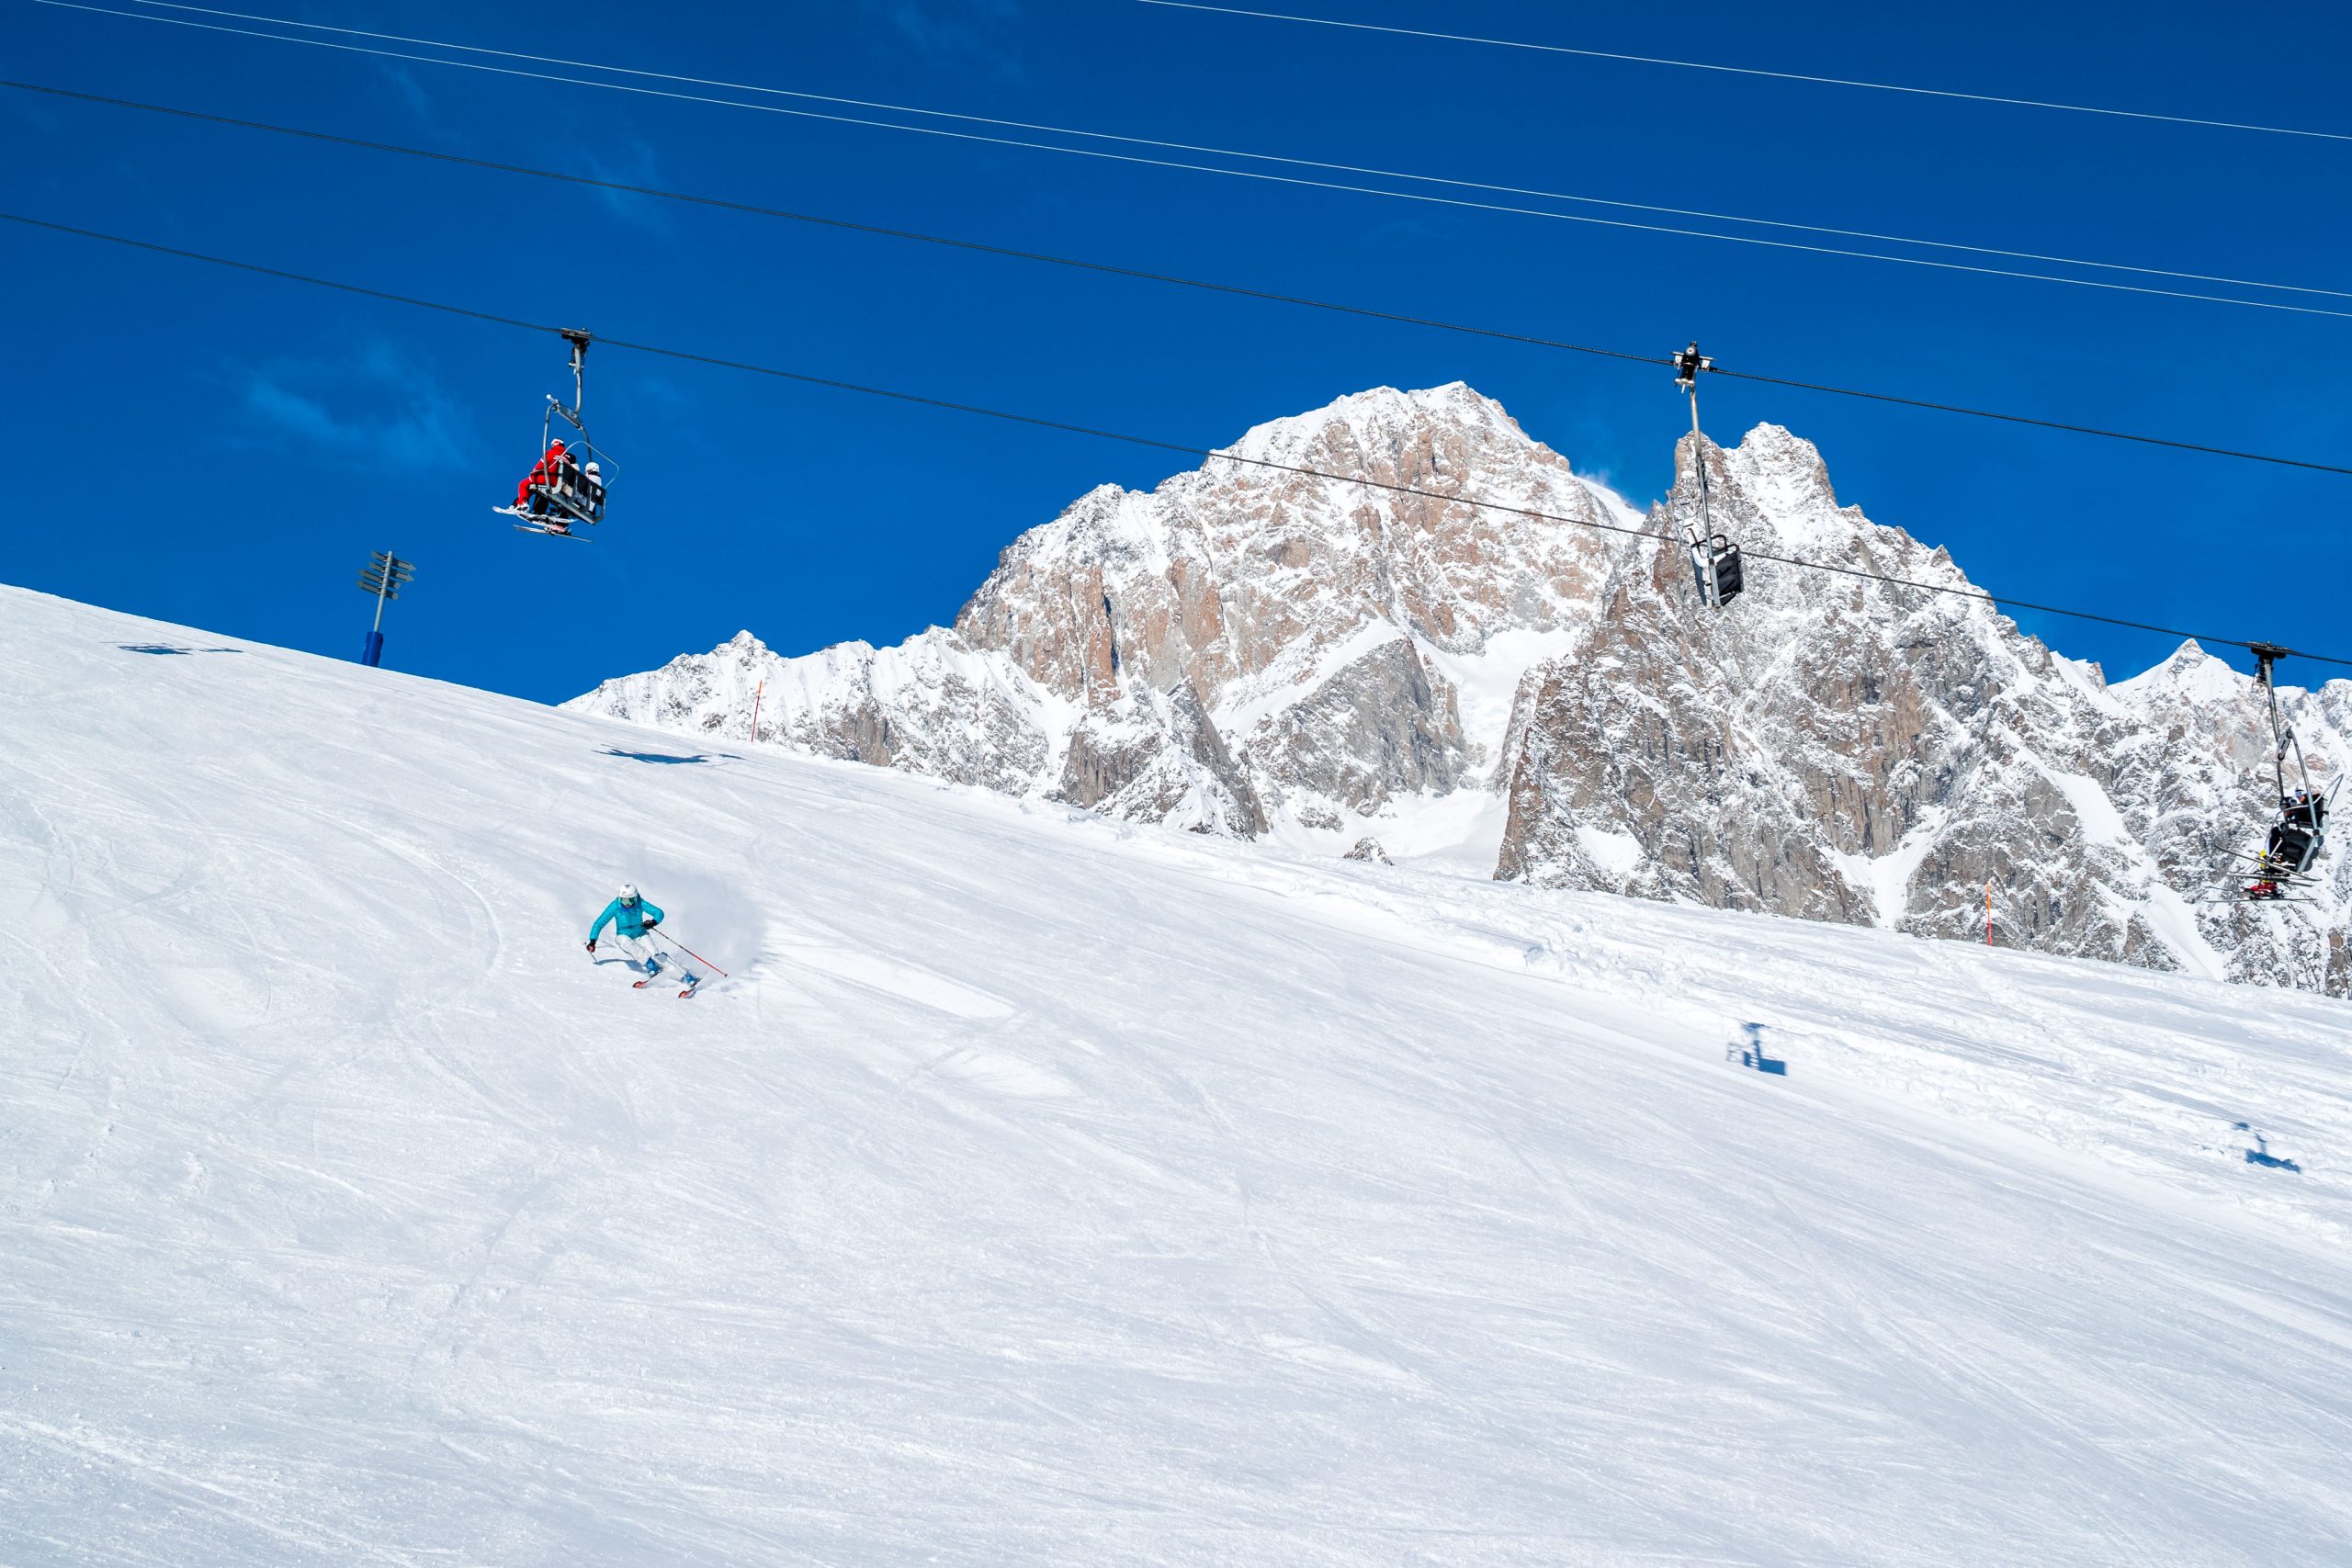 SKI ALPIN
L’activité hivernale par excellence ! Skier au cœur des Alpes avec une vue imprenable sur le Mont Blanc : 18 remontées mécaniques et plus de 33 pistes de ski adaptées à tous les niveaux, du débutant à l’expert, pour une expérience sans limites. Courmayeur offre des pistes parfaitement damées et une qualité de neige exceptionnelle, grâce en partie au système d’enneigement qui couvre plus de 80% du domaine, garantissant un haut niveau de performance. Préparez-vous à vivre une aventure passionnante sur les pistes du Mont Blanc – ce n’est qu’un début.
Découvrir plus
